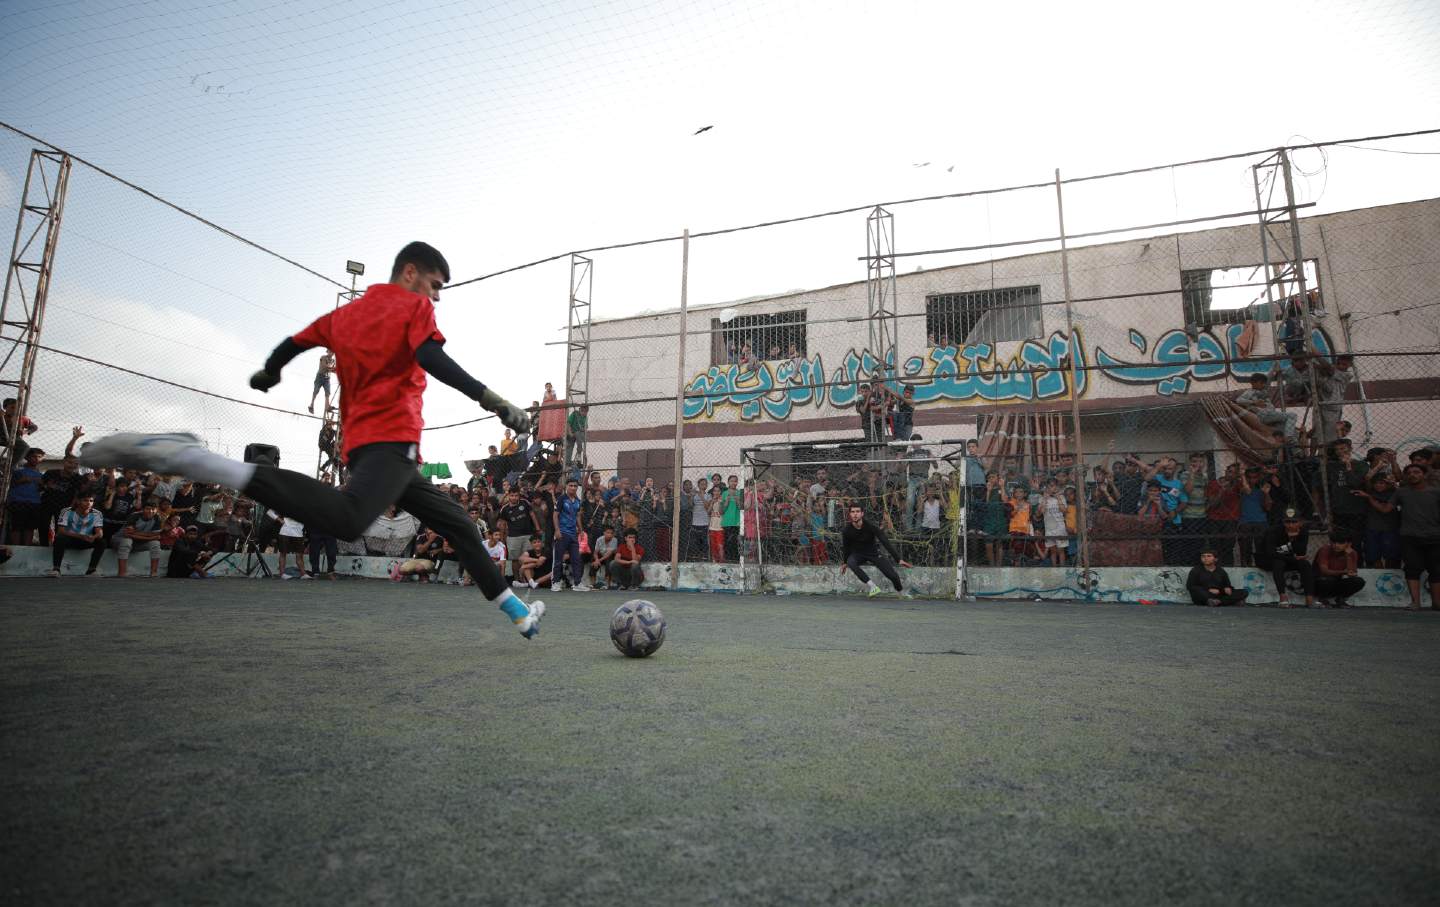 Torschuss während eines Fußballspiels in Rafah